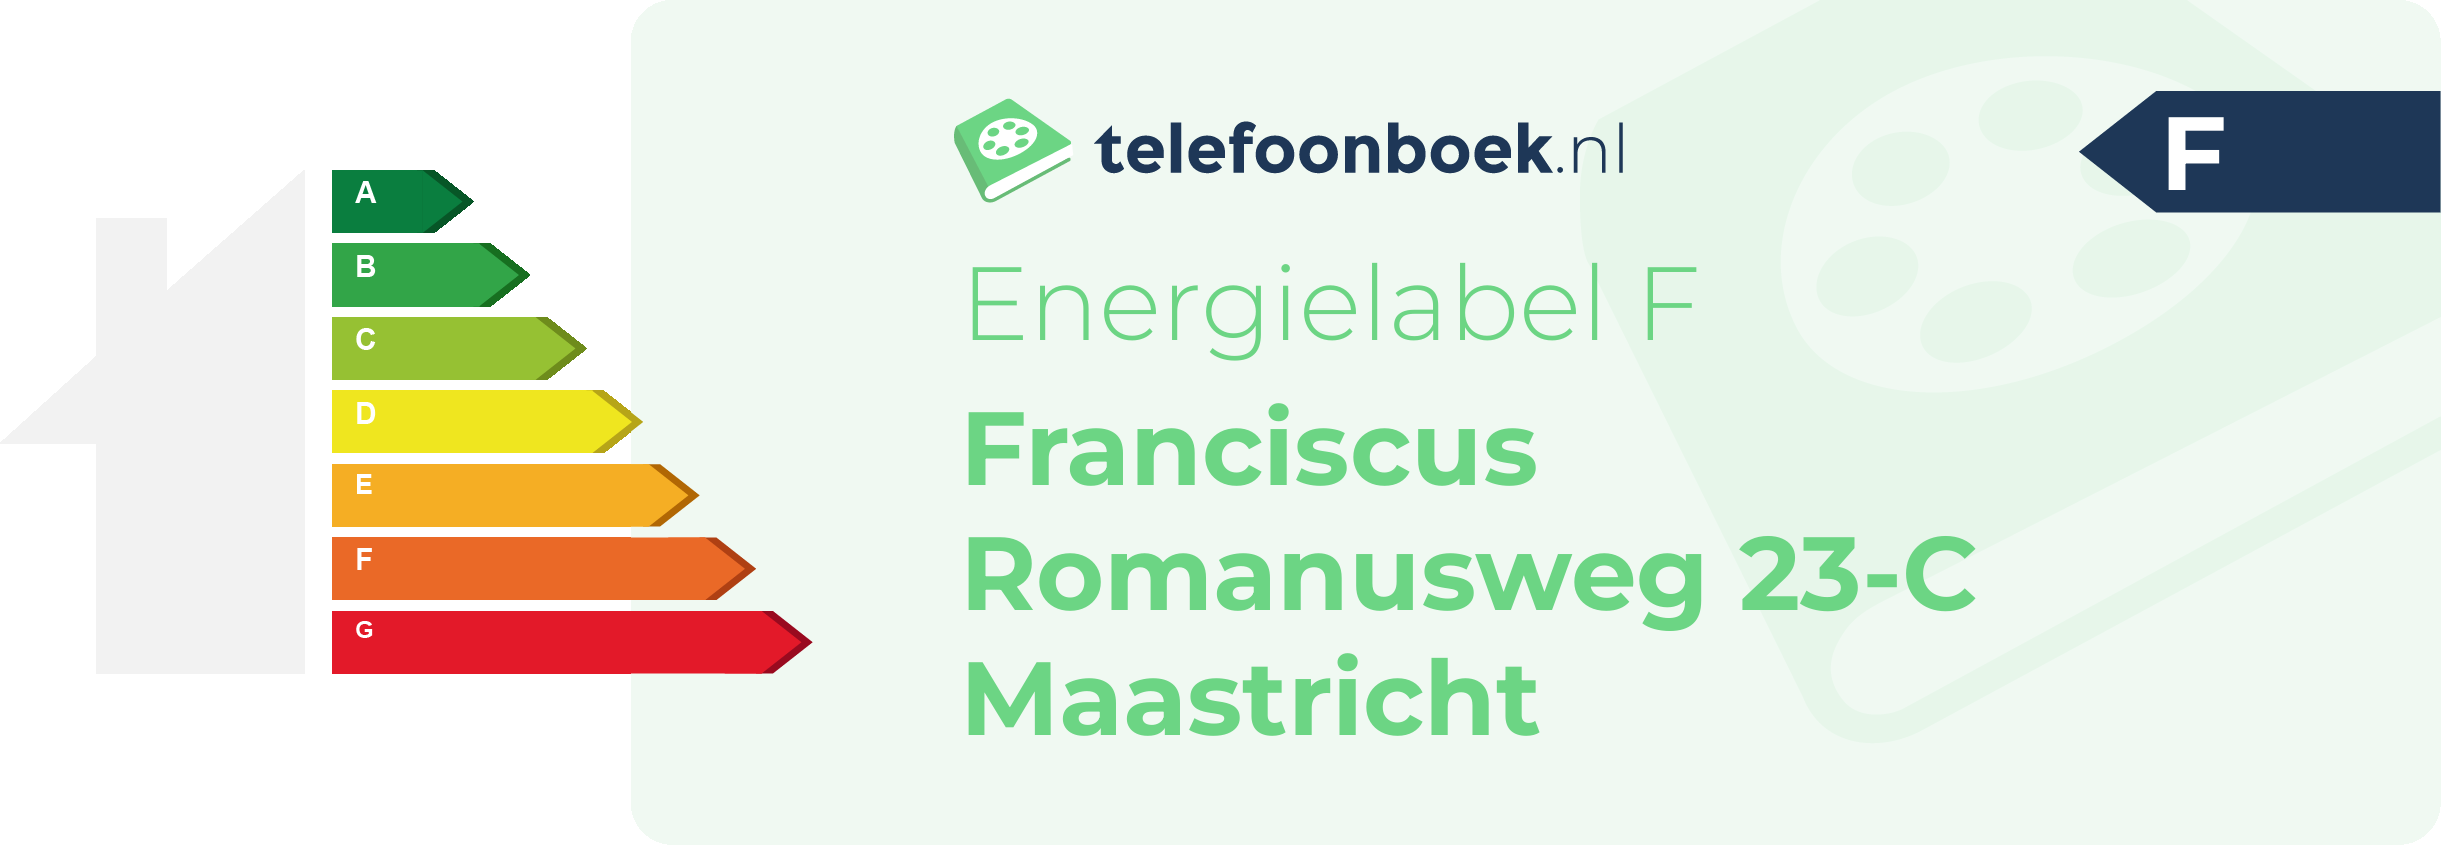 Energielabel Franciscus Romanusweg 23-C Maastricht